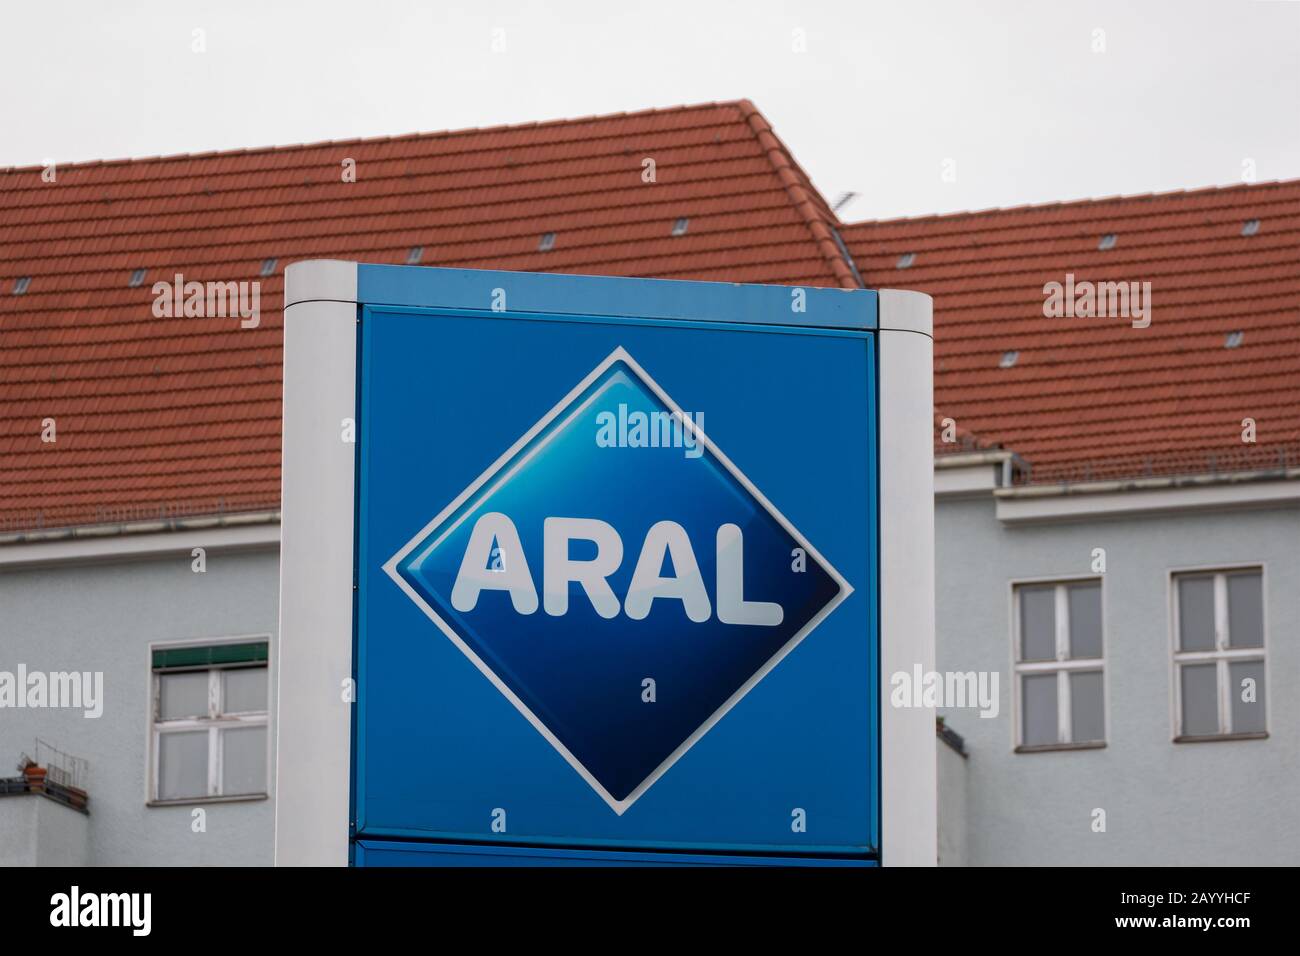 Berlin, DEUTSCHLAND - 17. FEBRUAR 2020: Aral-Logo Auf EINER Tankstelle